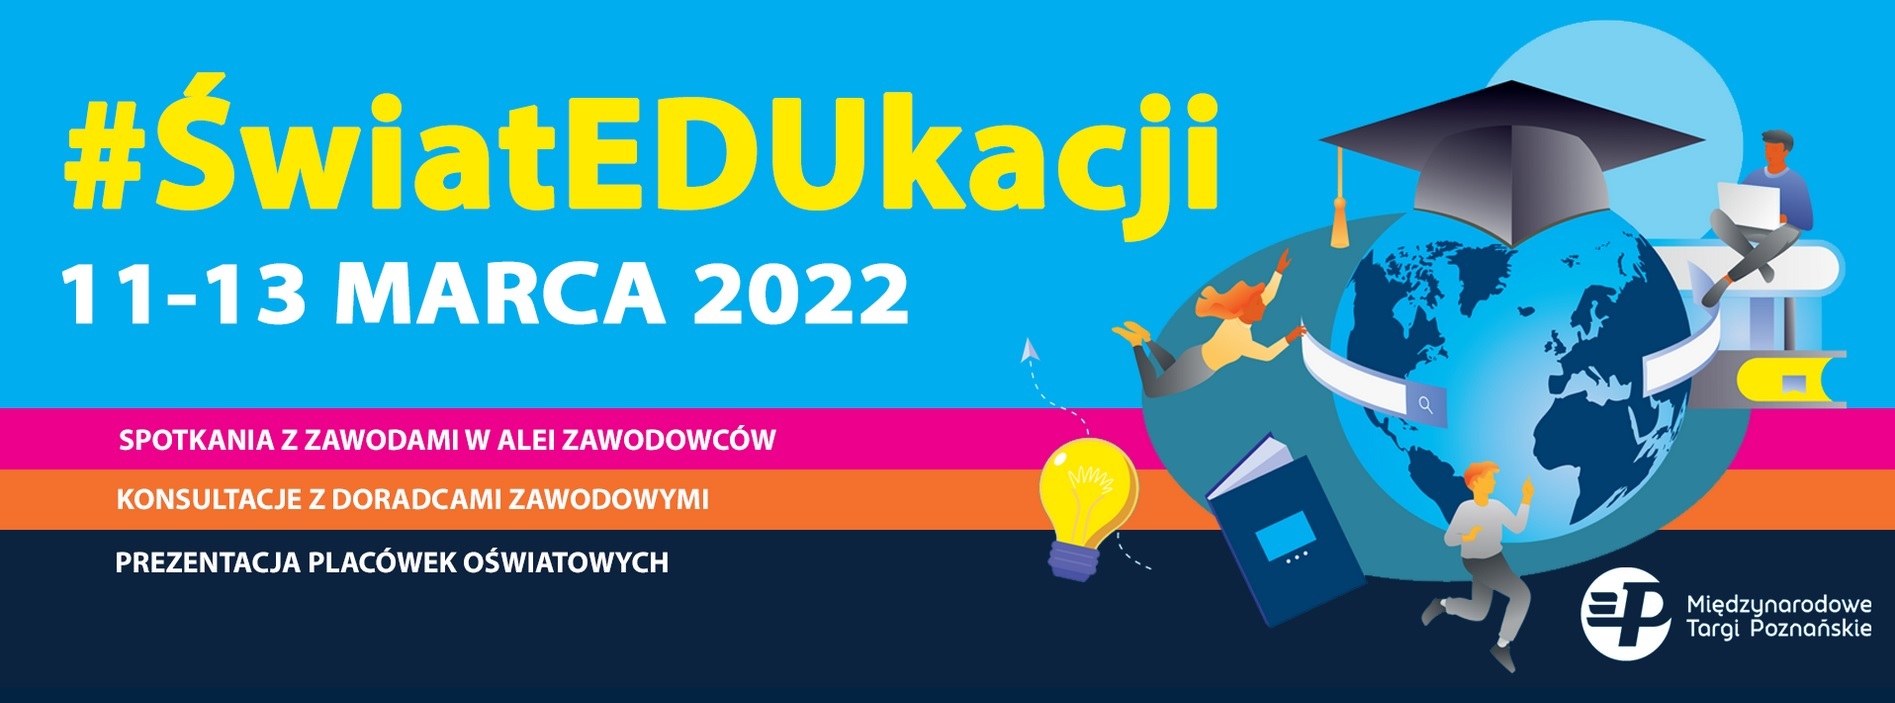 Kolorowa grafika prezentująca krótką informację na temat Targów Edukacyjnych w Poznaniu w 2022 roku.